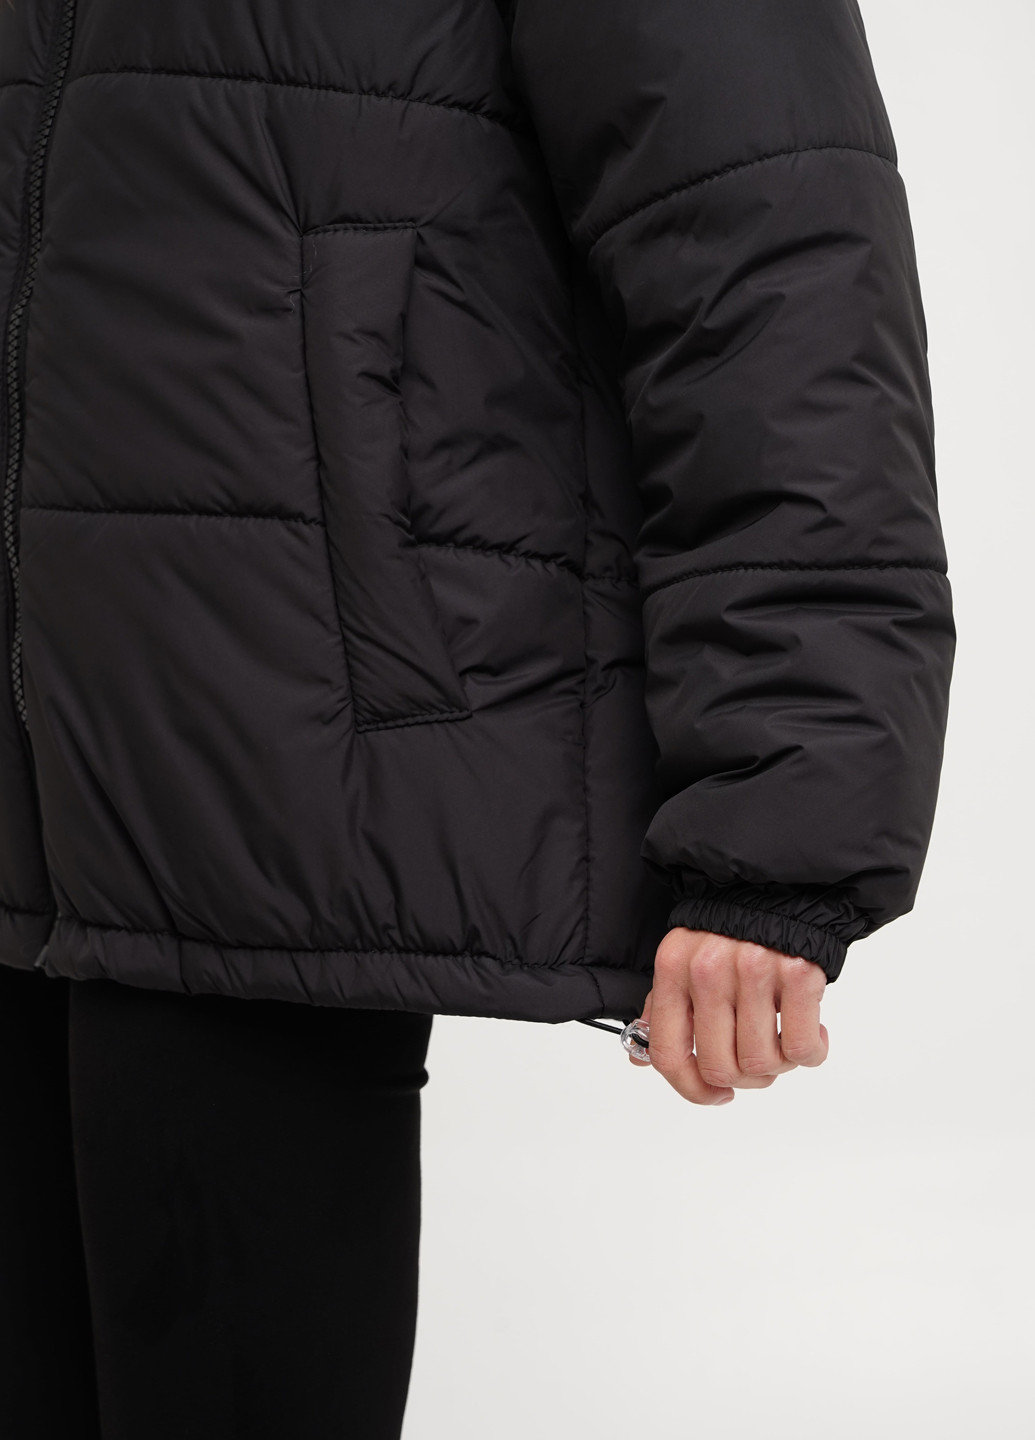 Черная демисезонная теплая куртка KASTA design